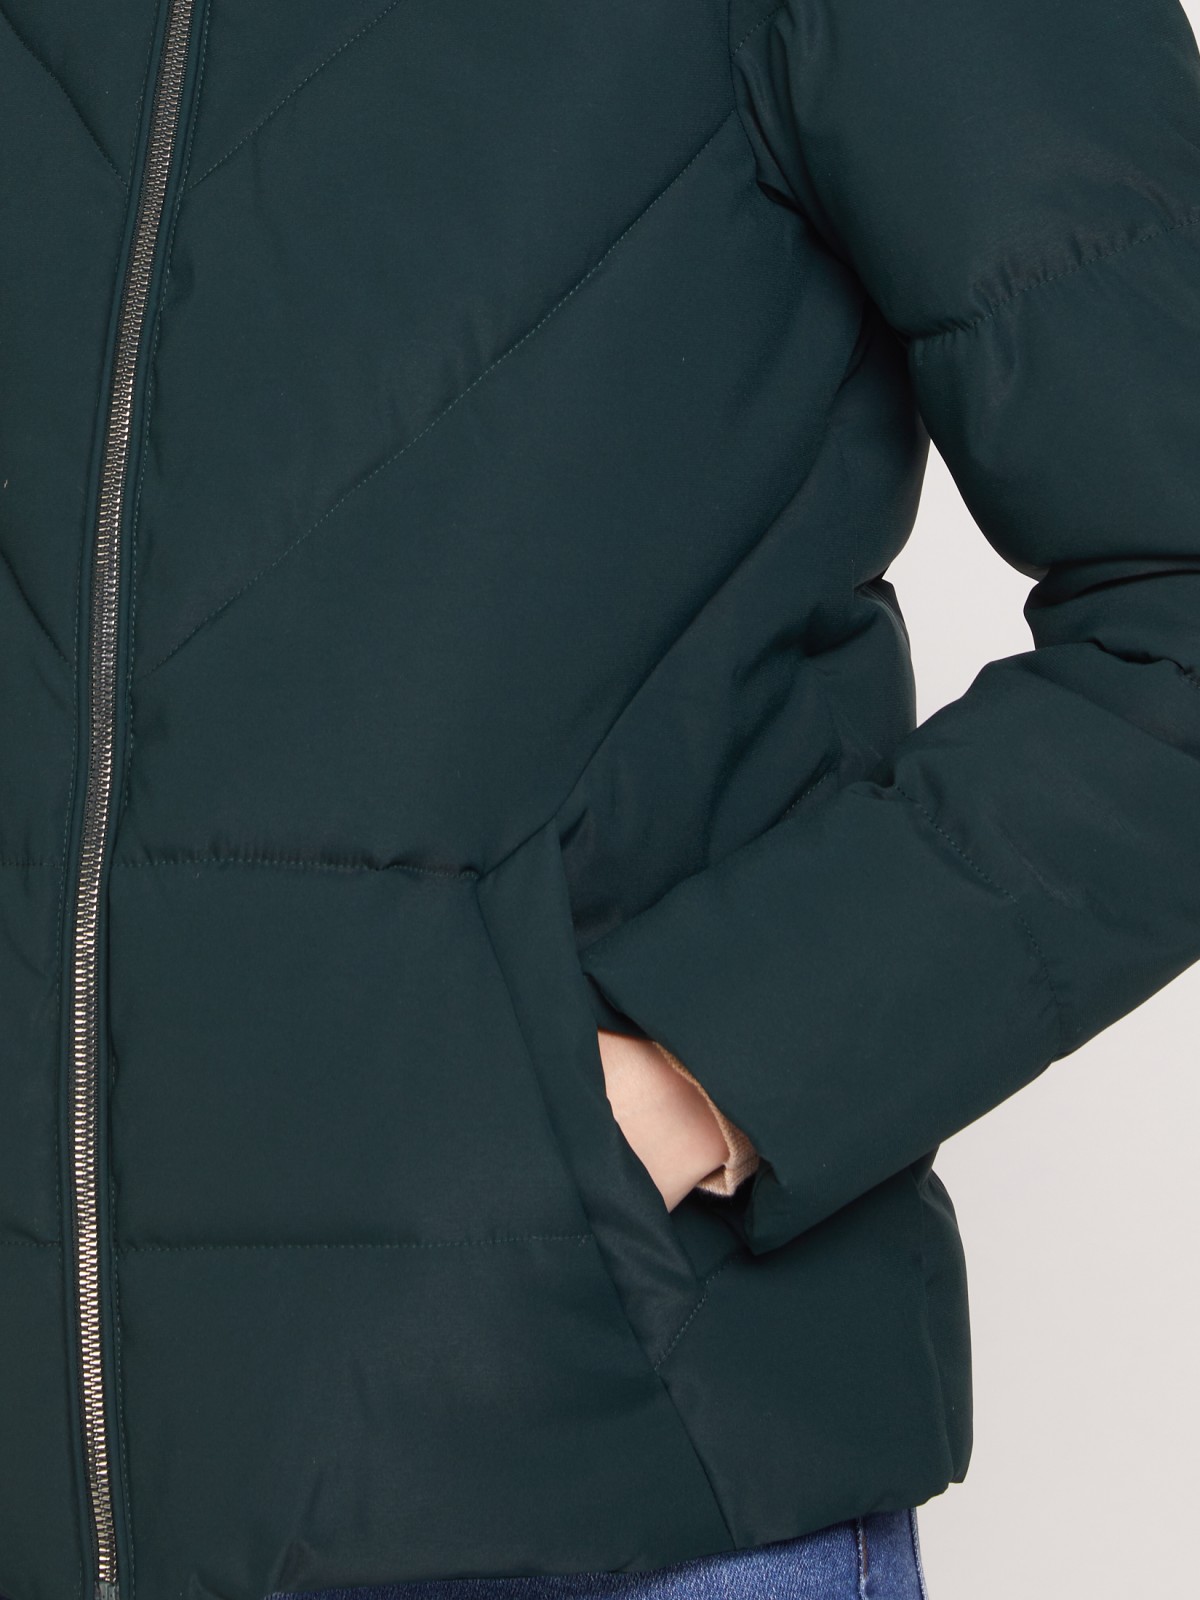 Утеплённая стёганая куртка с капюшоном zolla 021335102094, цвет темно-зеленый, размер XS - фото 4